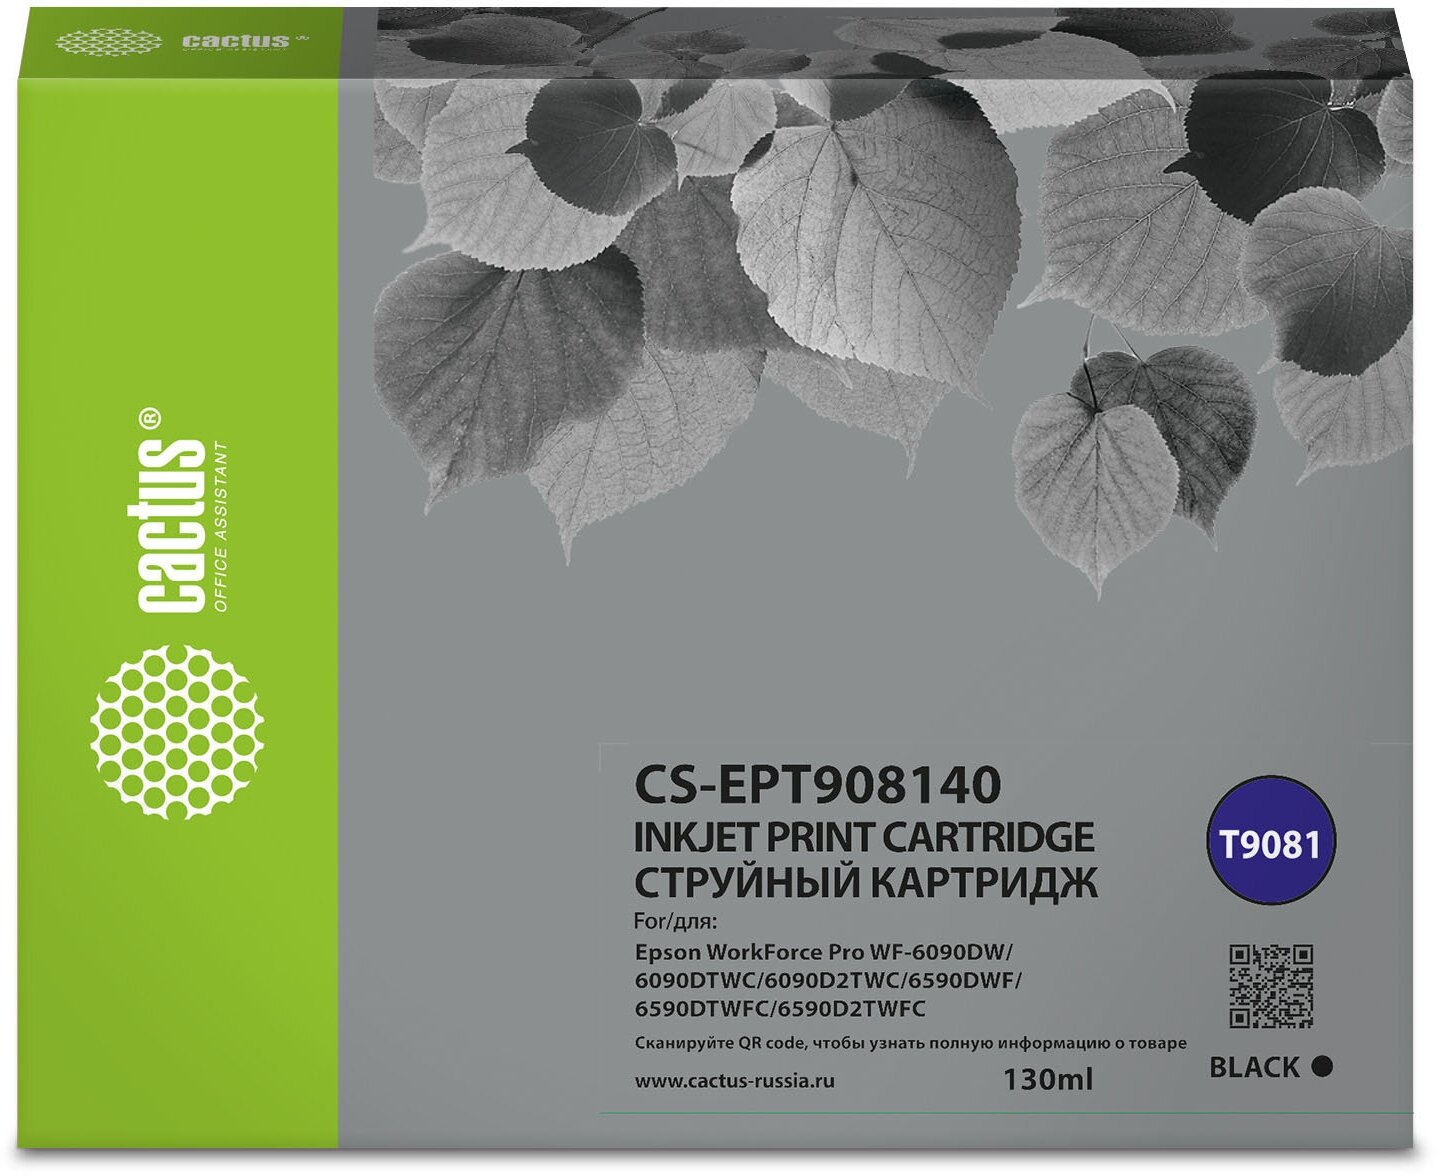 Картридж струйный Cactus CS-EPT908140 T9081 черный (130мл) для Epson WorkForce WF-6090DW/WF-6590DWF Pro